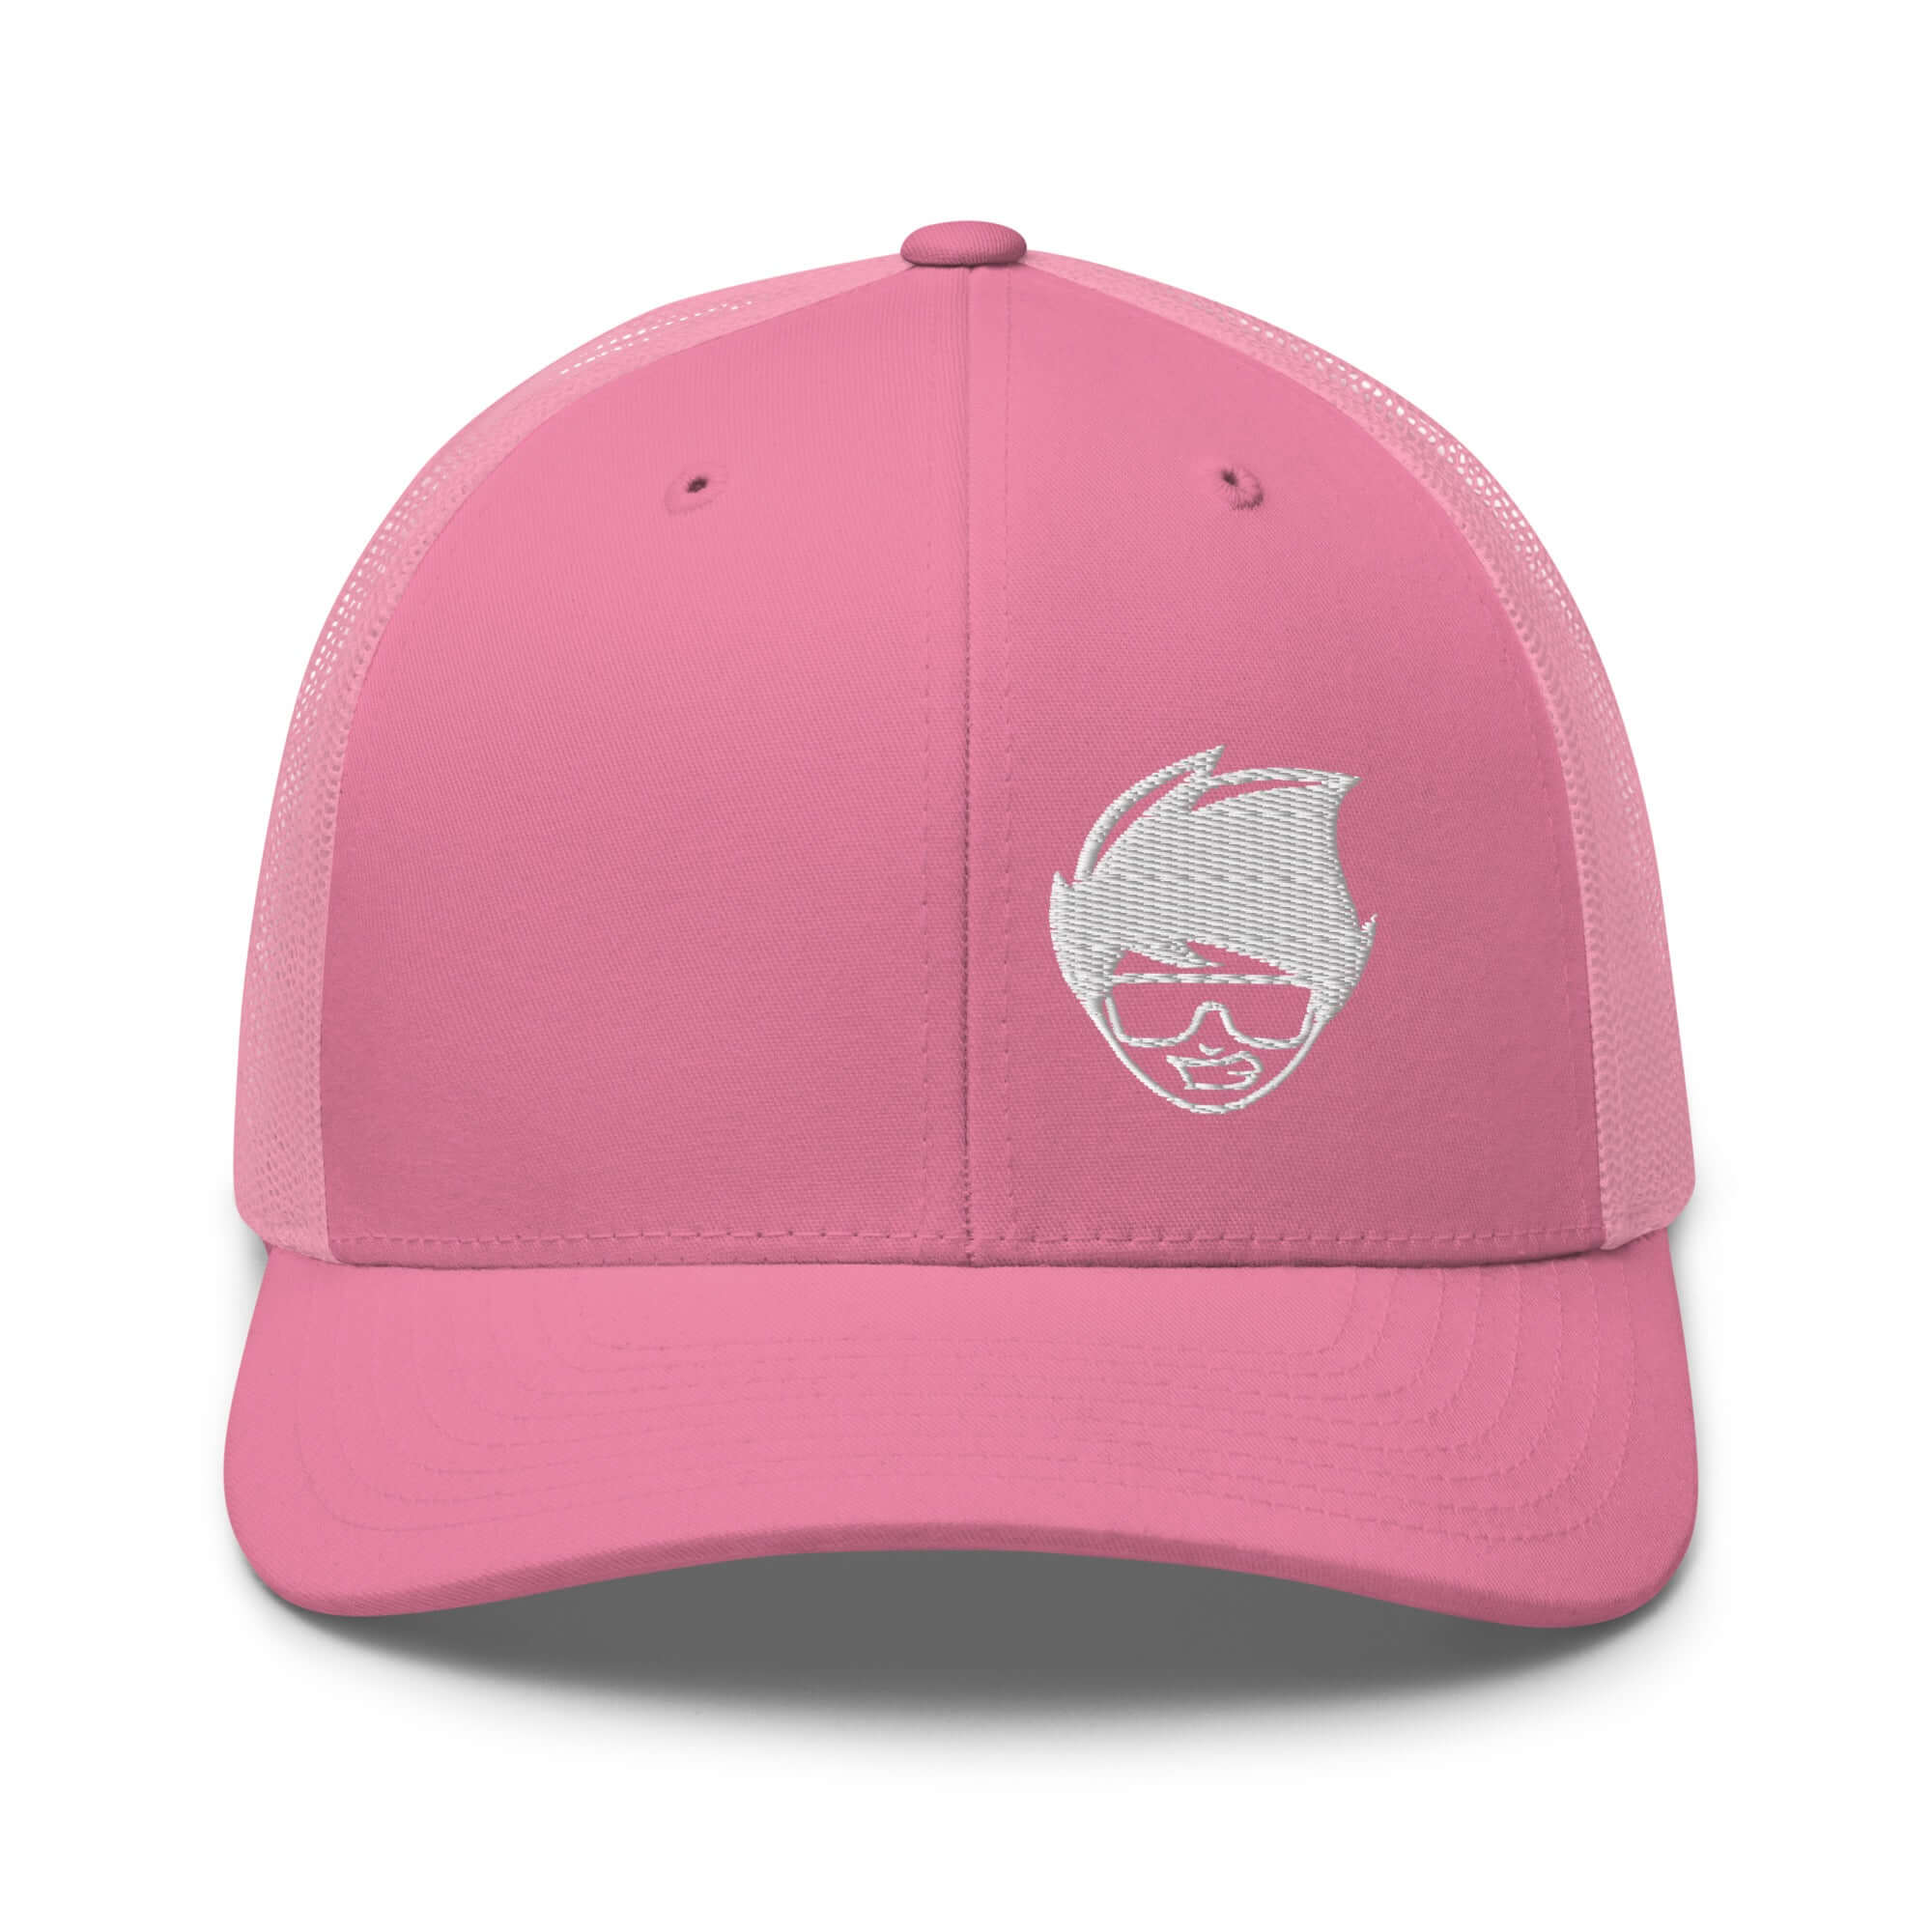 https://gowaxhead.com/cdn/shop/files/retro-trucker-hat-pink-front-64de588e26ee2.jpg?v=1692368573